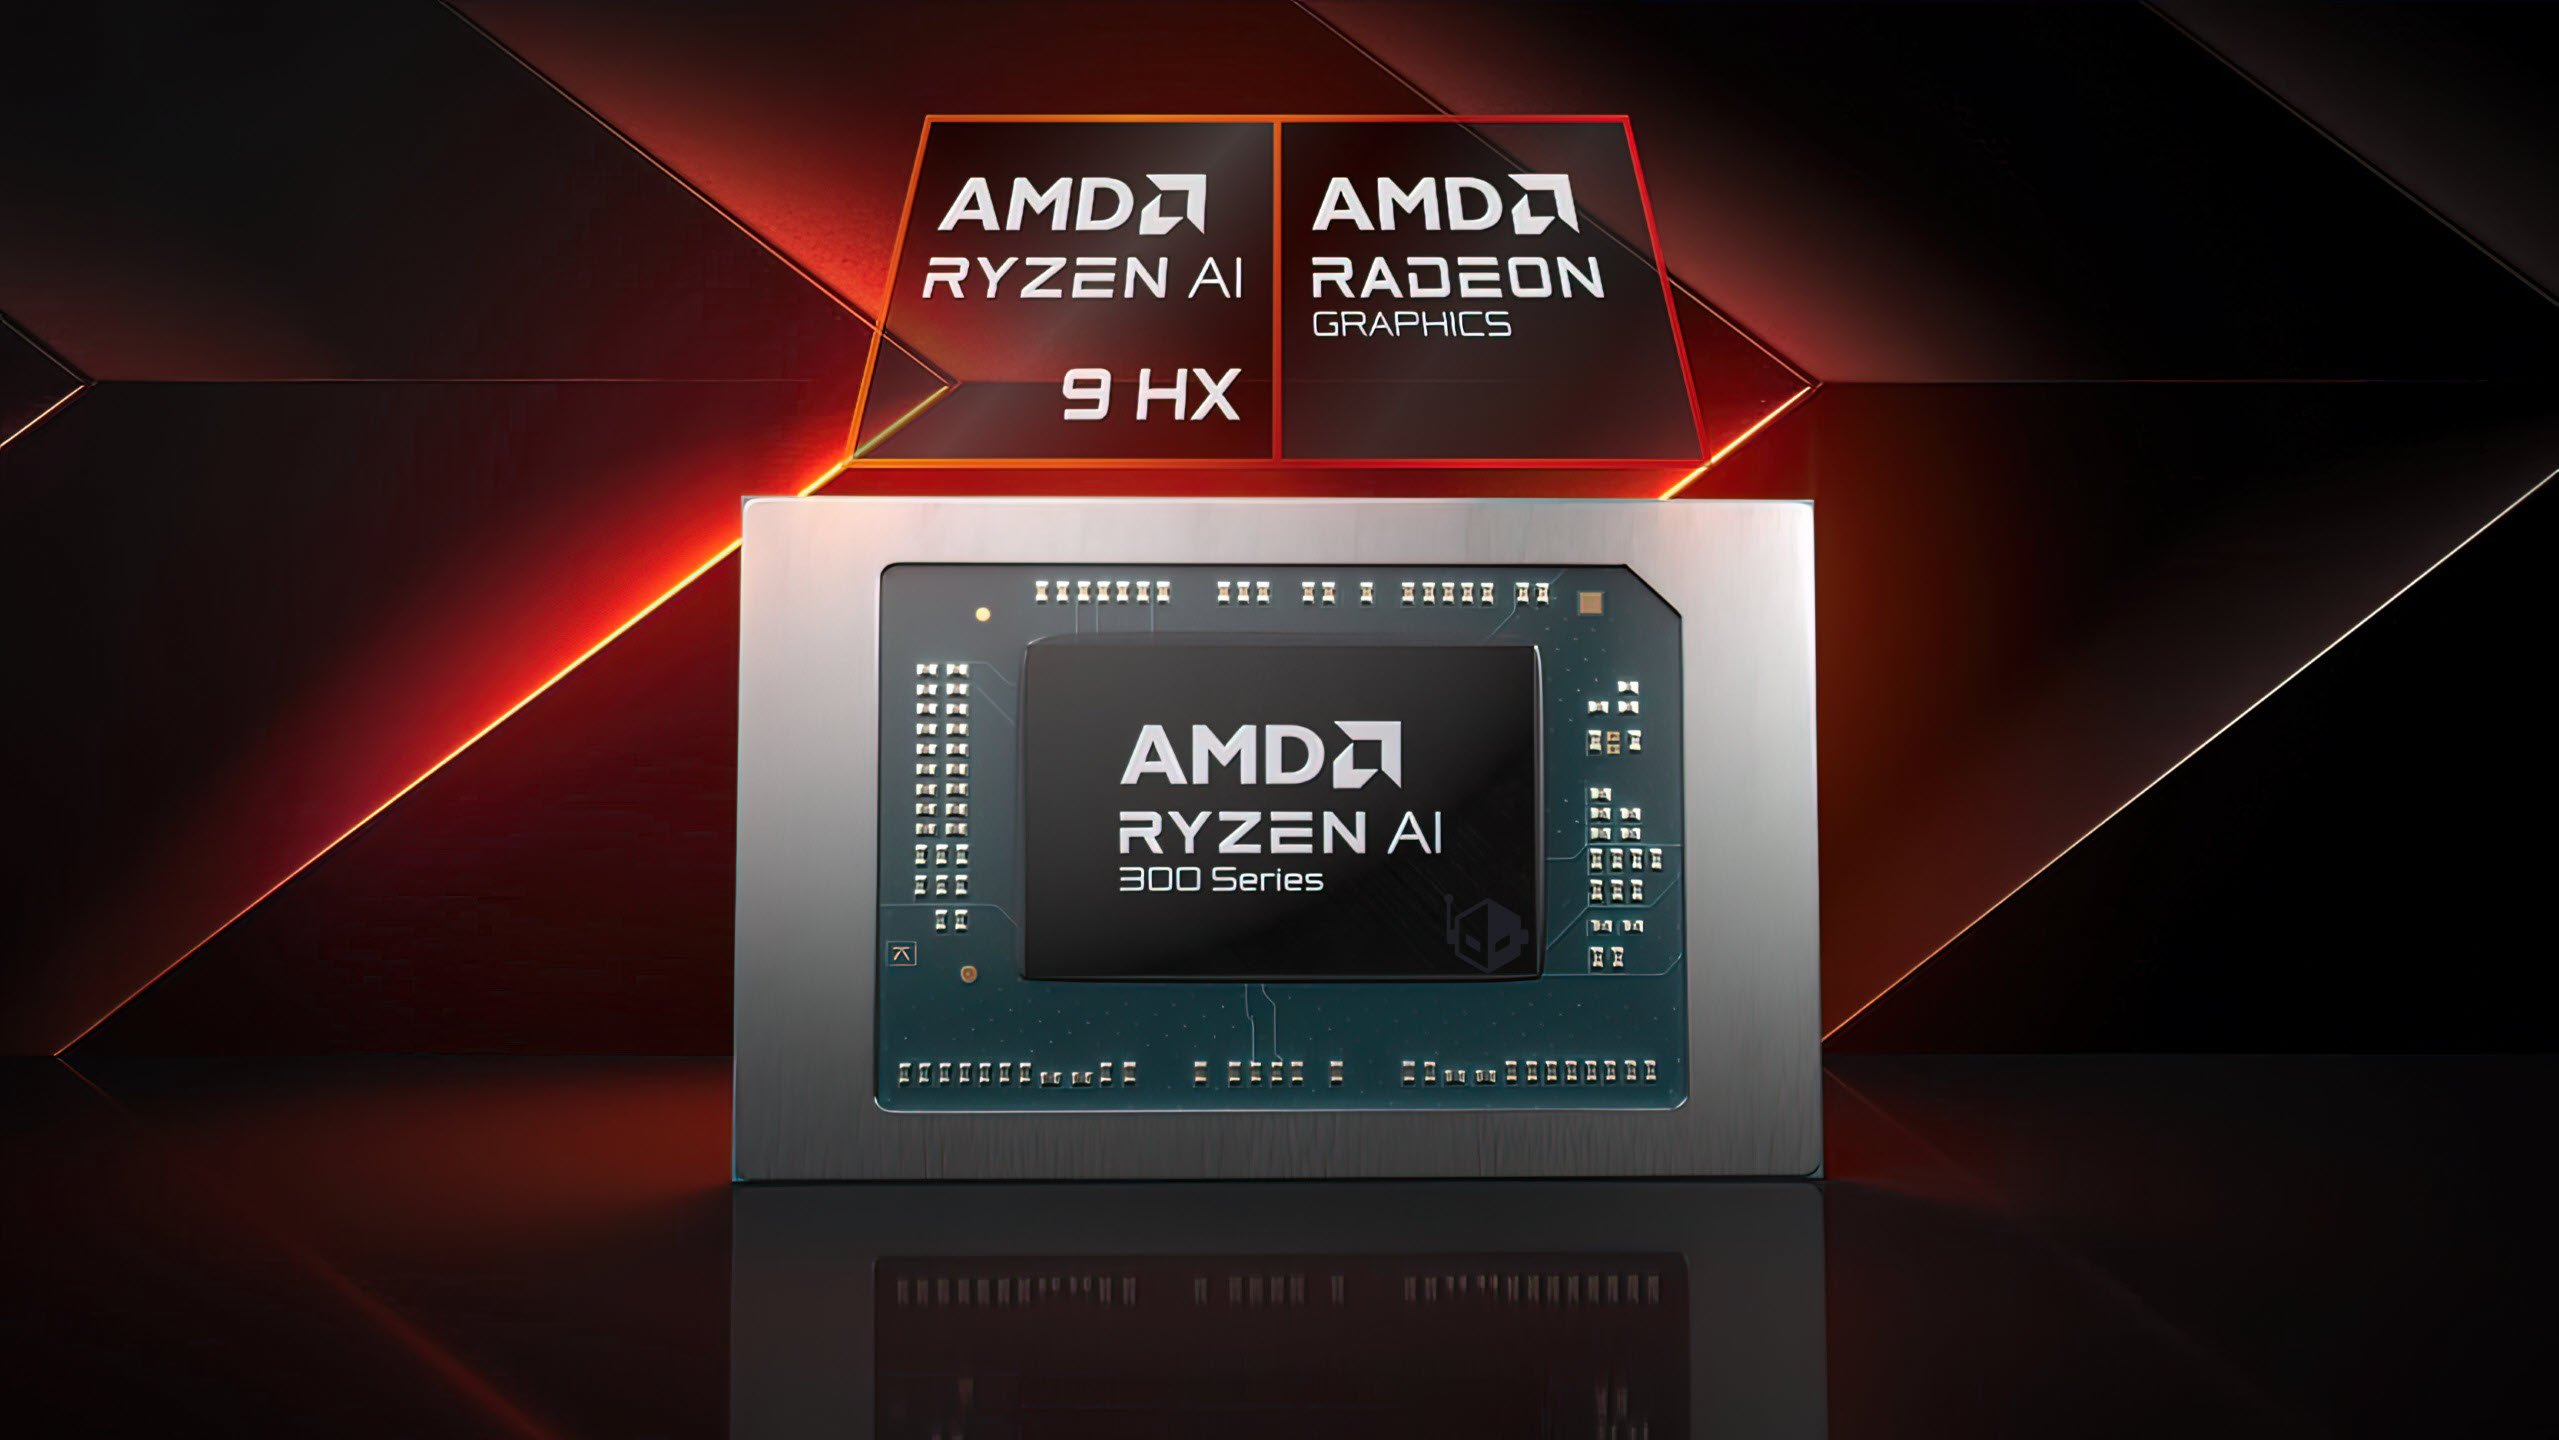 AMD Ryzen AI 9 HX 370 “Strix” APU Benchmarked: Zen 5 به سریع ترین عملکرد تک هسته ای موبایلی دست می یابد، تا 27٪ سریعتر در مقابل دریاچه شهاب سنگ